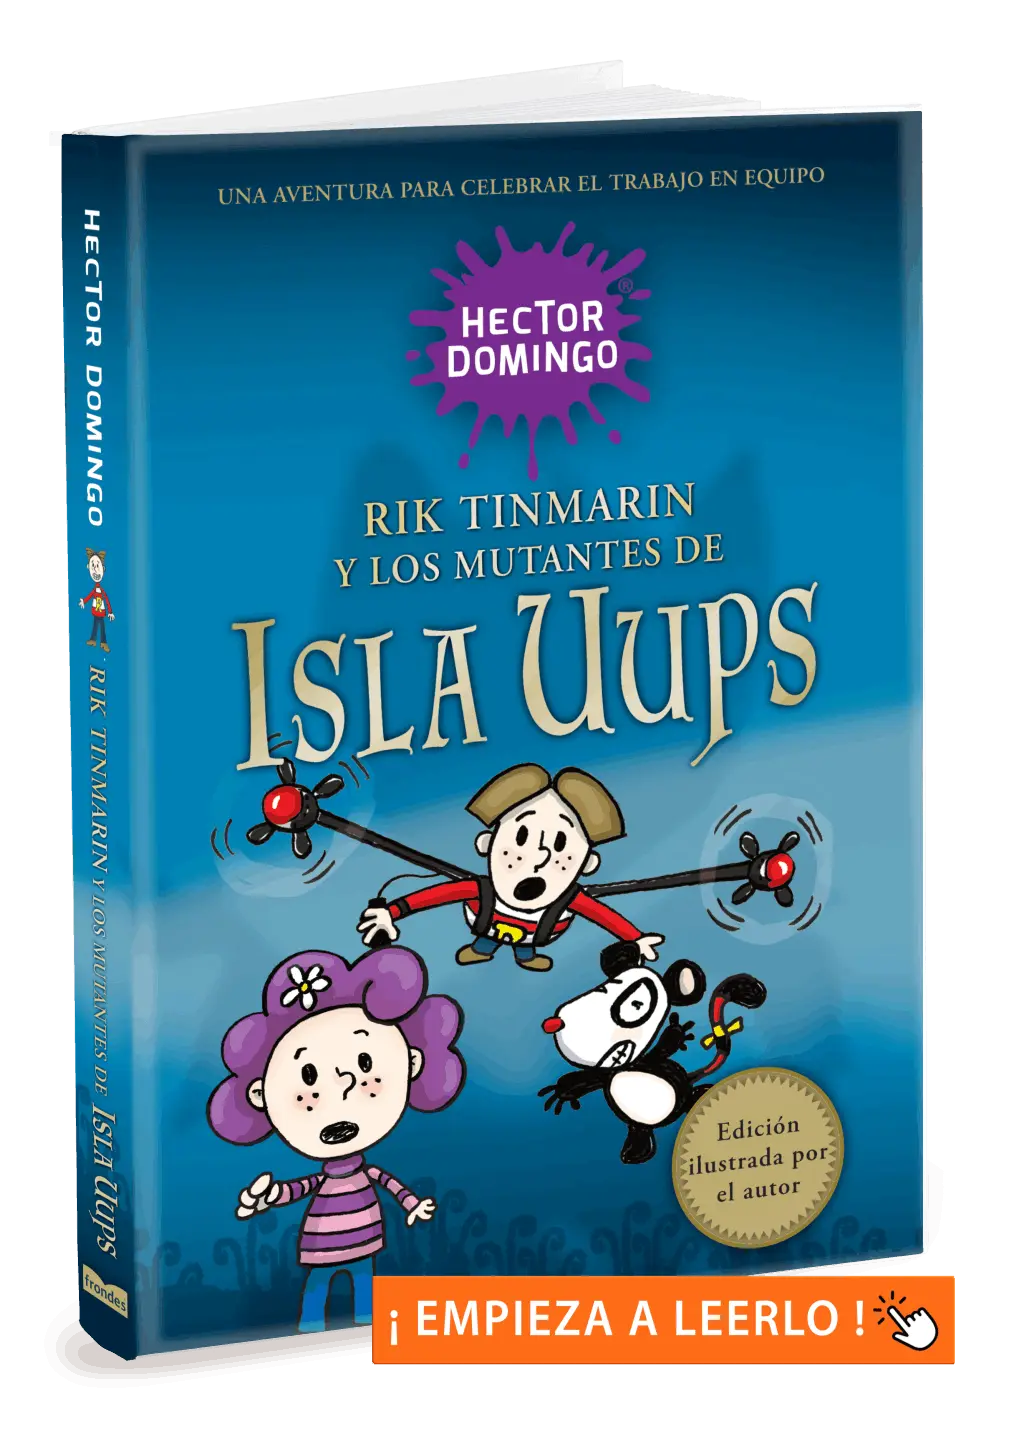 Rik Tinmarín y los mutantes de Isla Uups, por Héctor Domingo. Libros infantiles y juveniles.